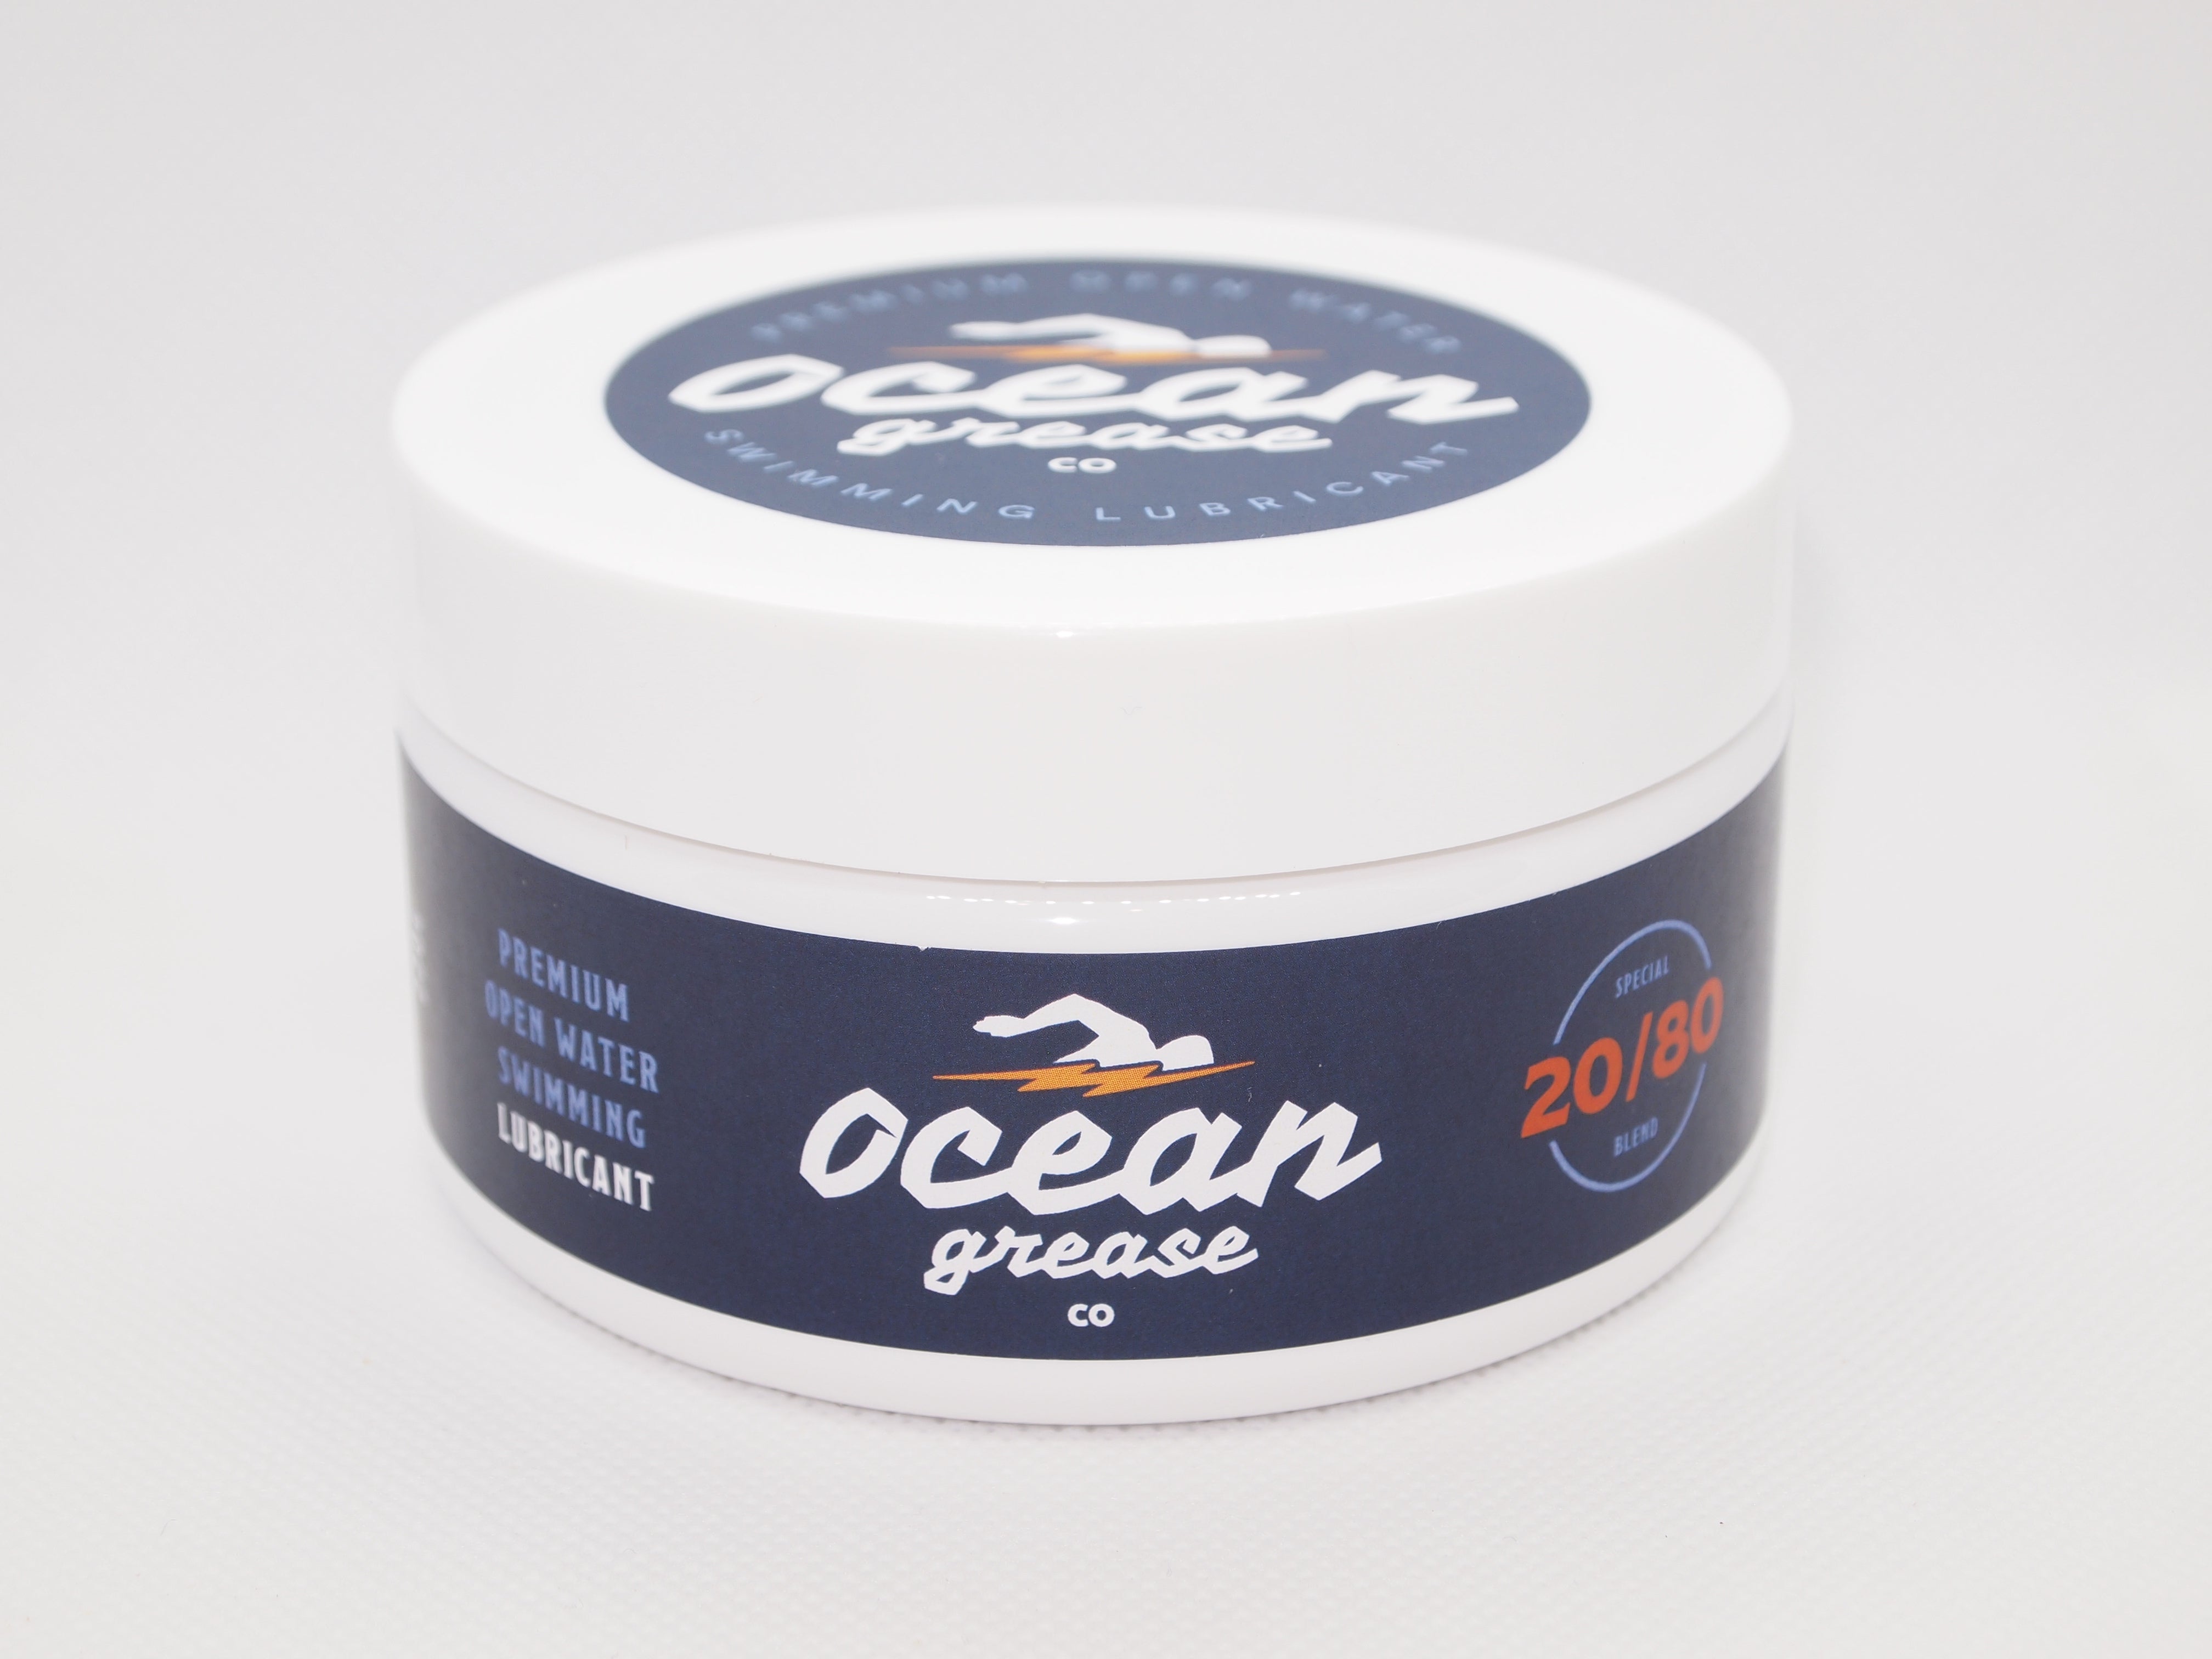 Ocean Grease 20/80 - 220g